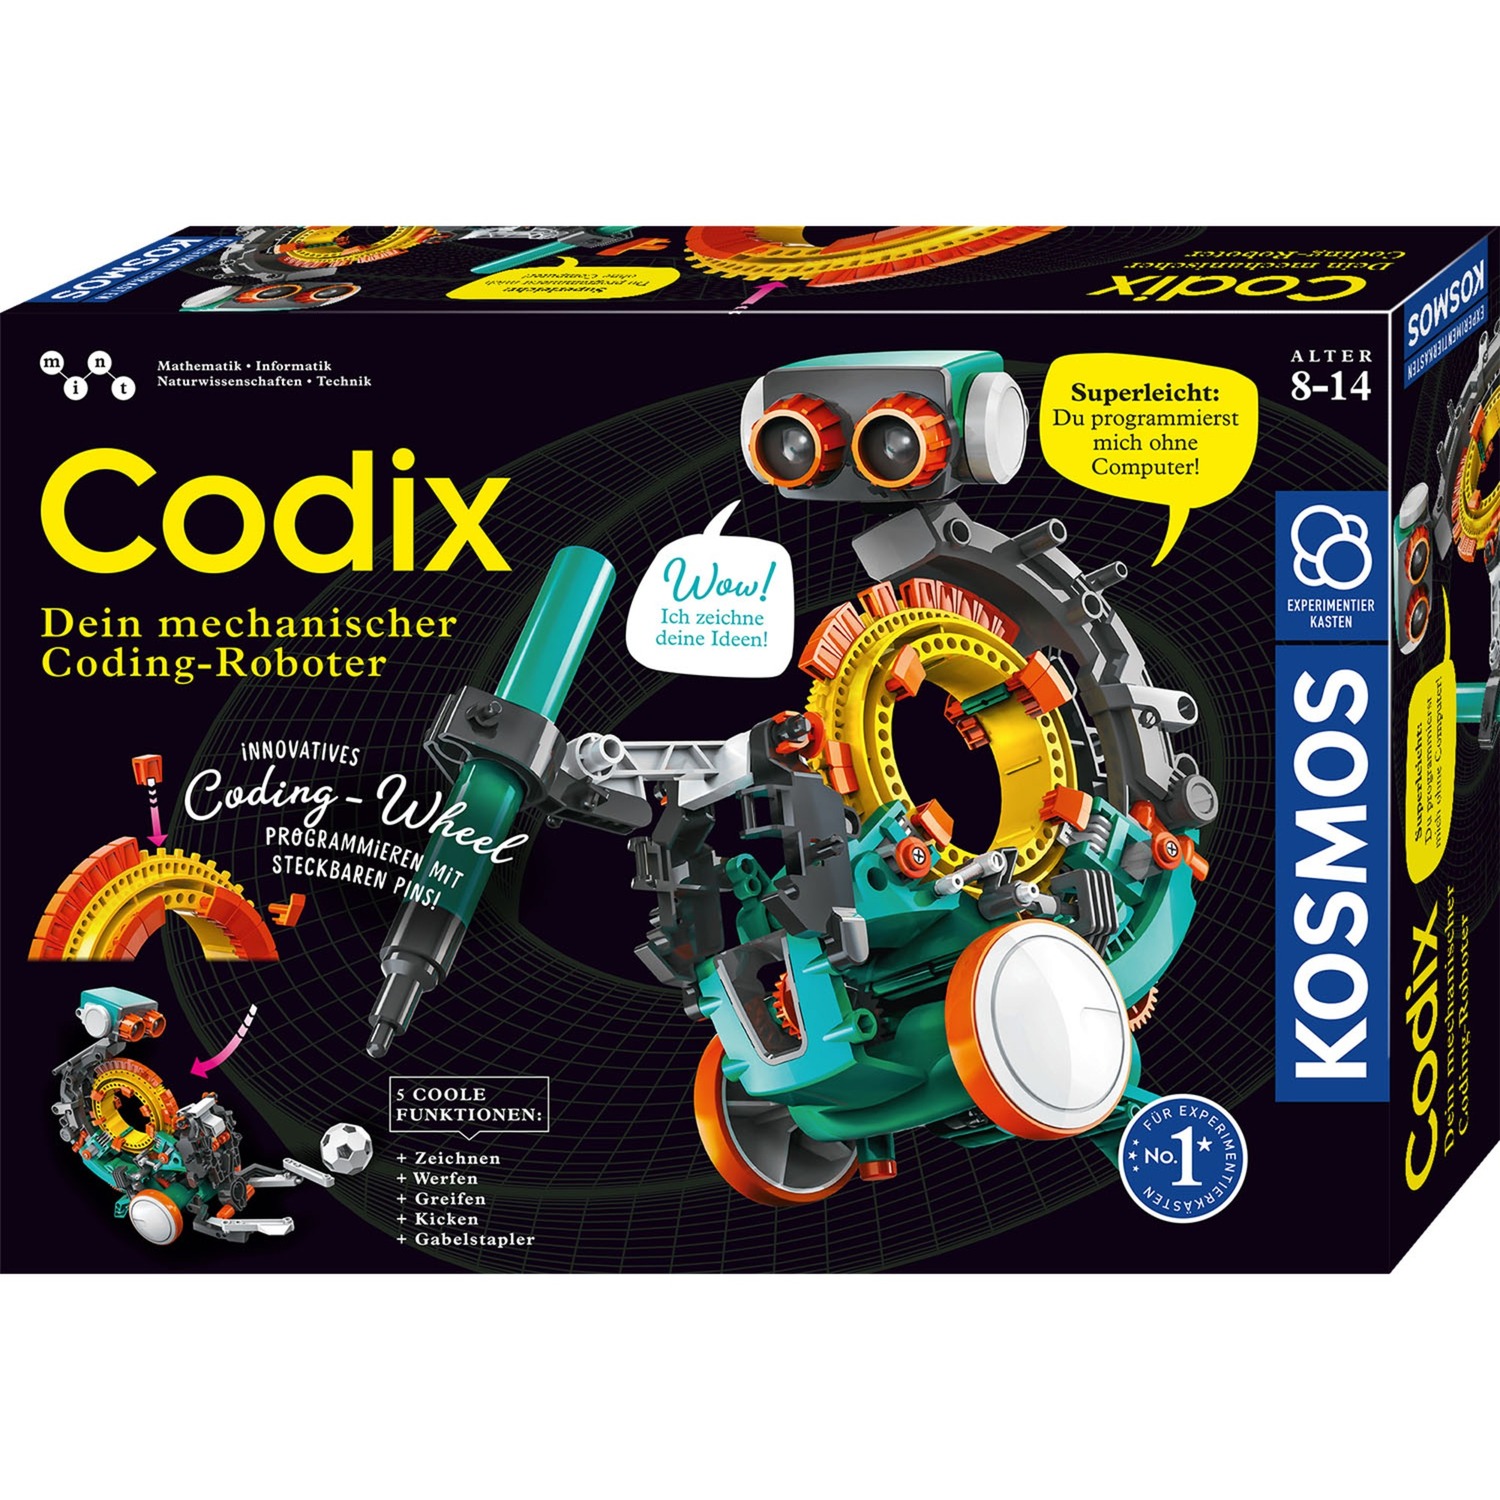 Codix - Dein mechanischer Coding-Roboter, Experimentierkasten von Kosmos